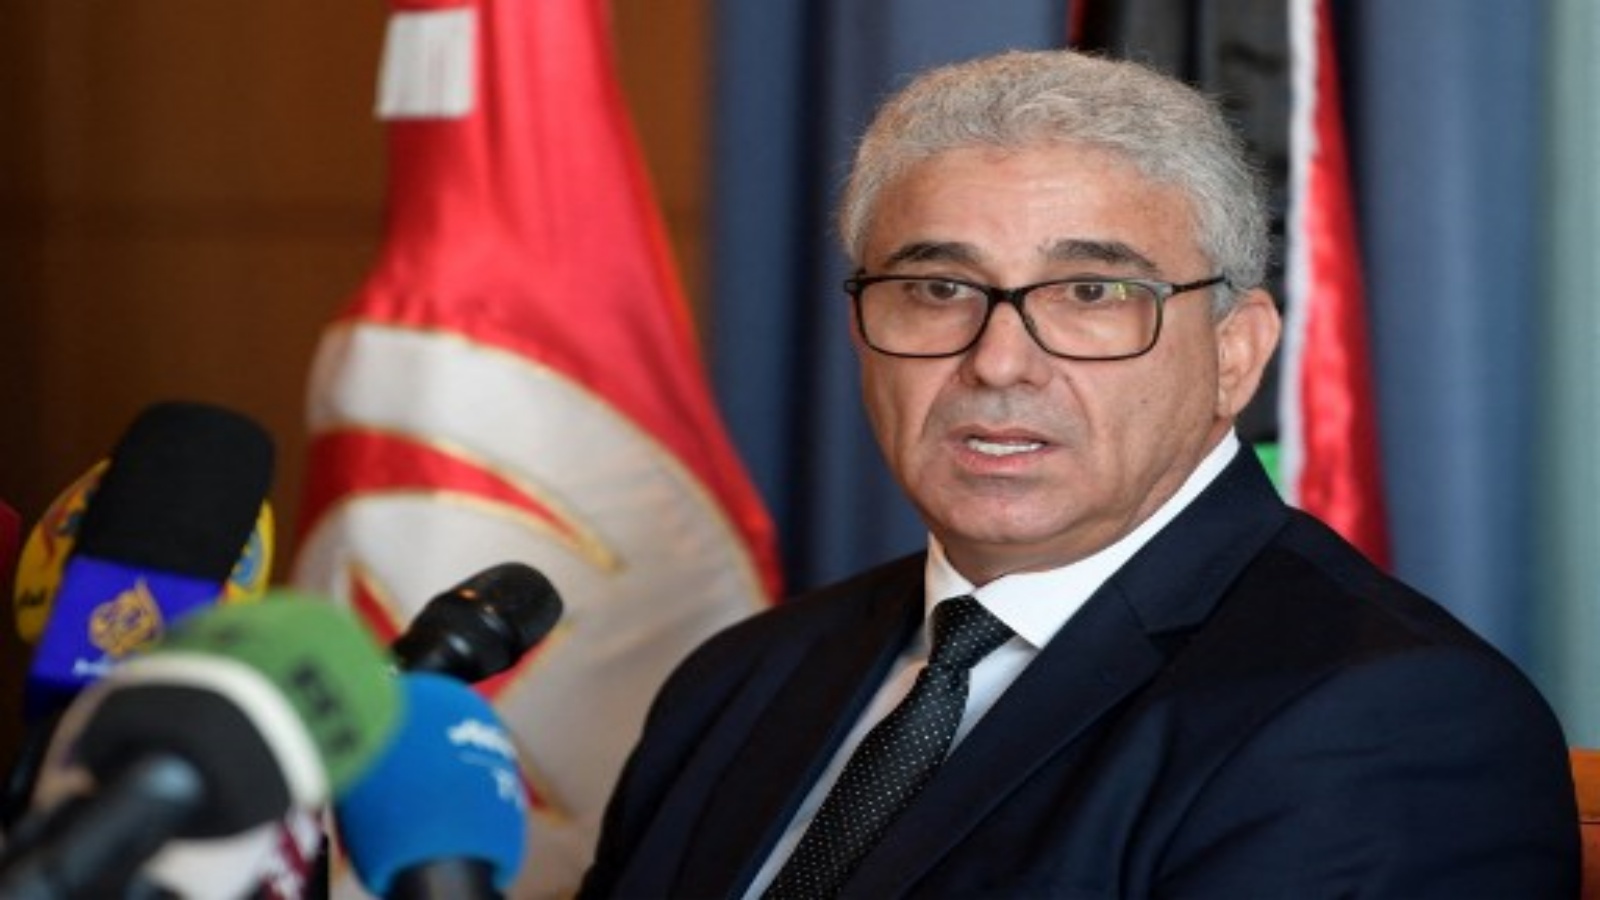 فتحي باشاغا ، وزير الداخلية في حكومة الوفاق الوطني الليبية المعترف بها من قبل الأمم المتحدة ومقرها طرابلس 